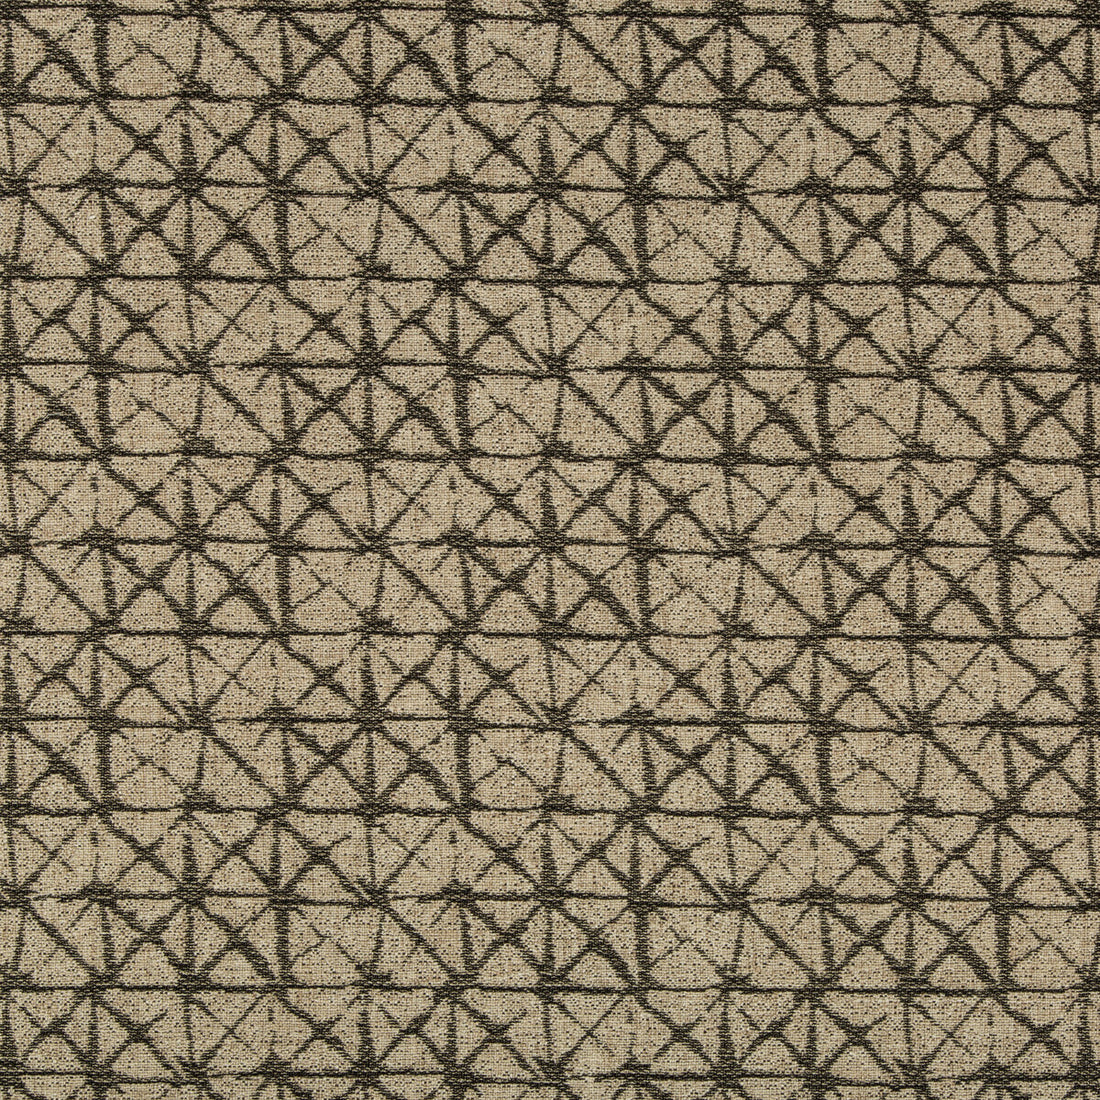 Kravet Design fabric in 35732-168 color - pattern 35732.168.0 - by Kravet Design